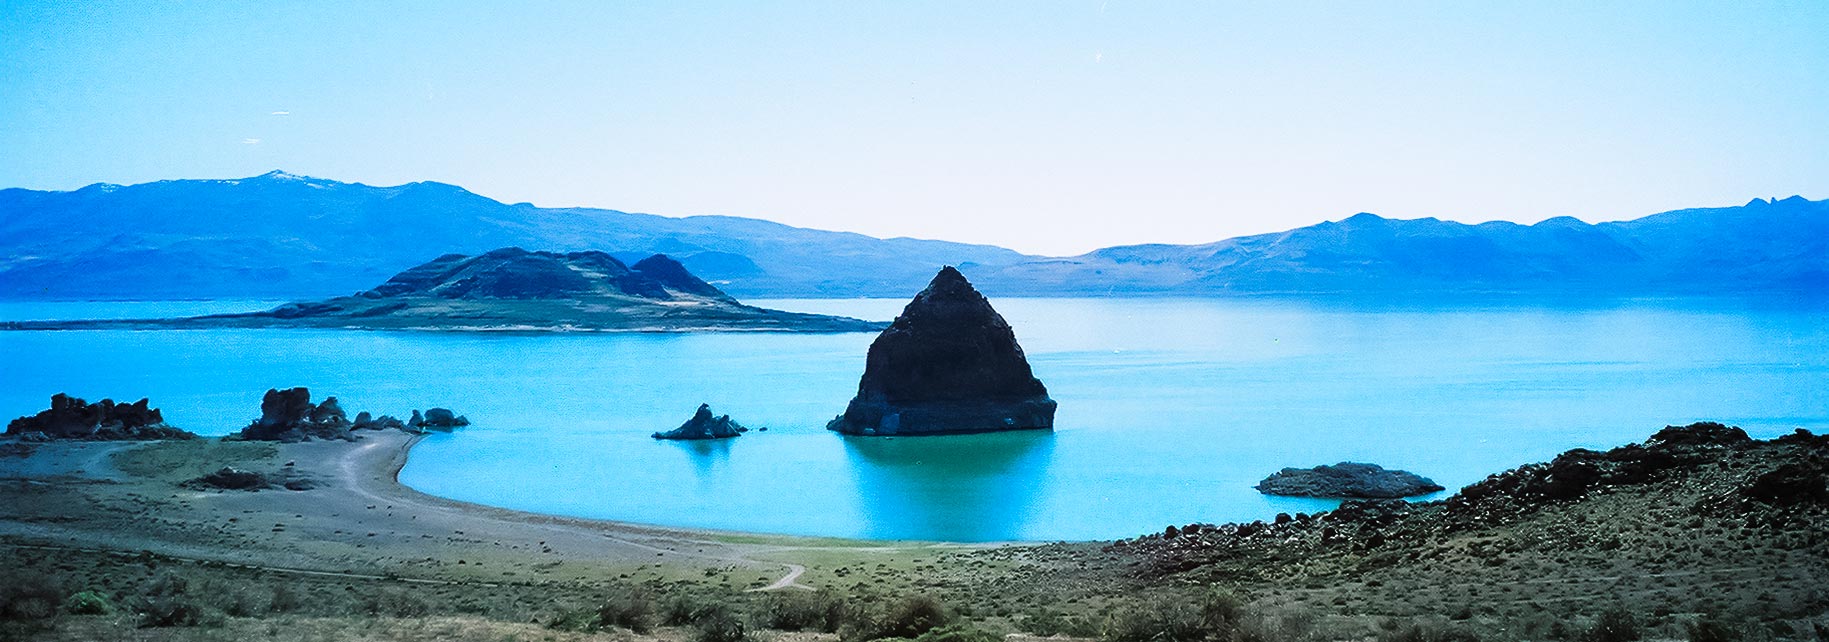 View of Pyramid Lake